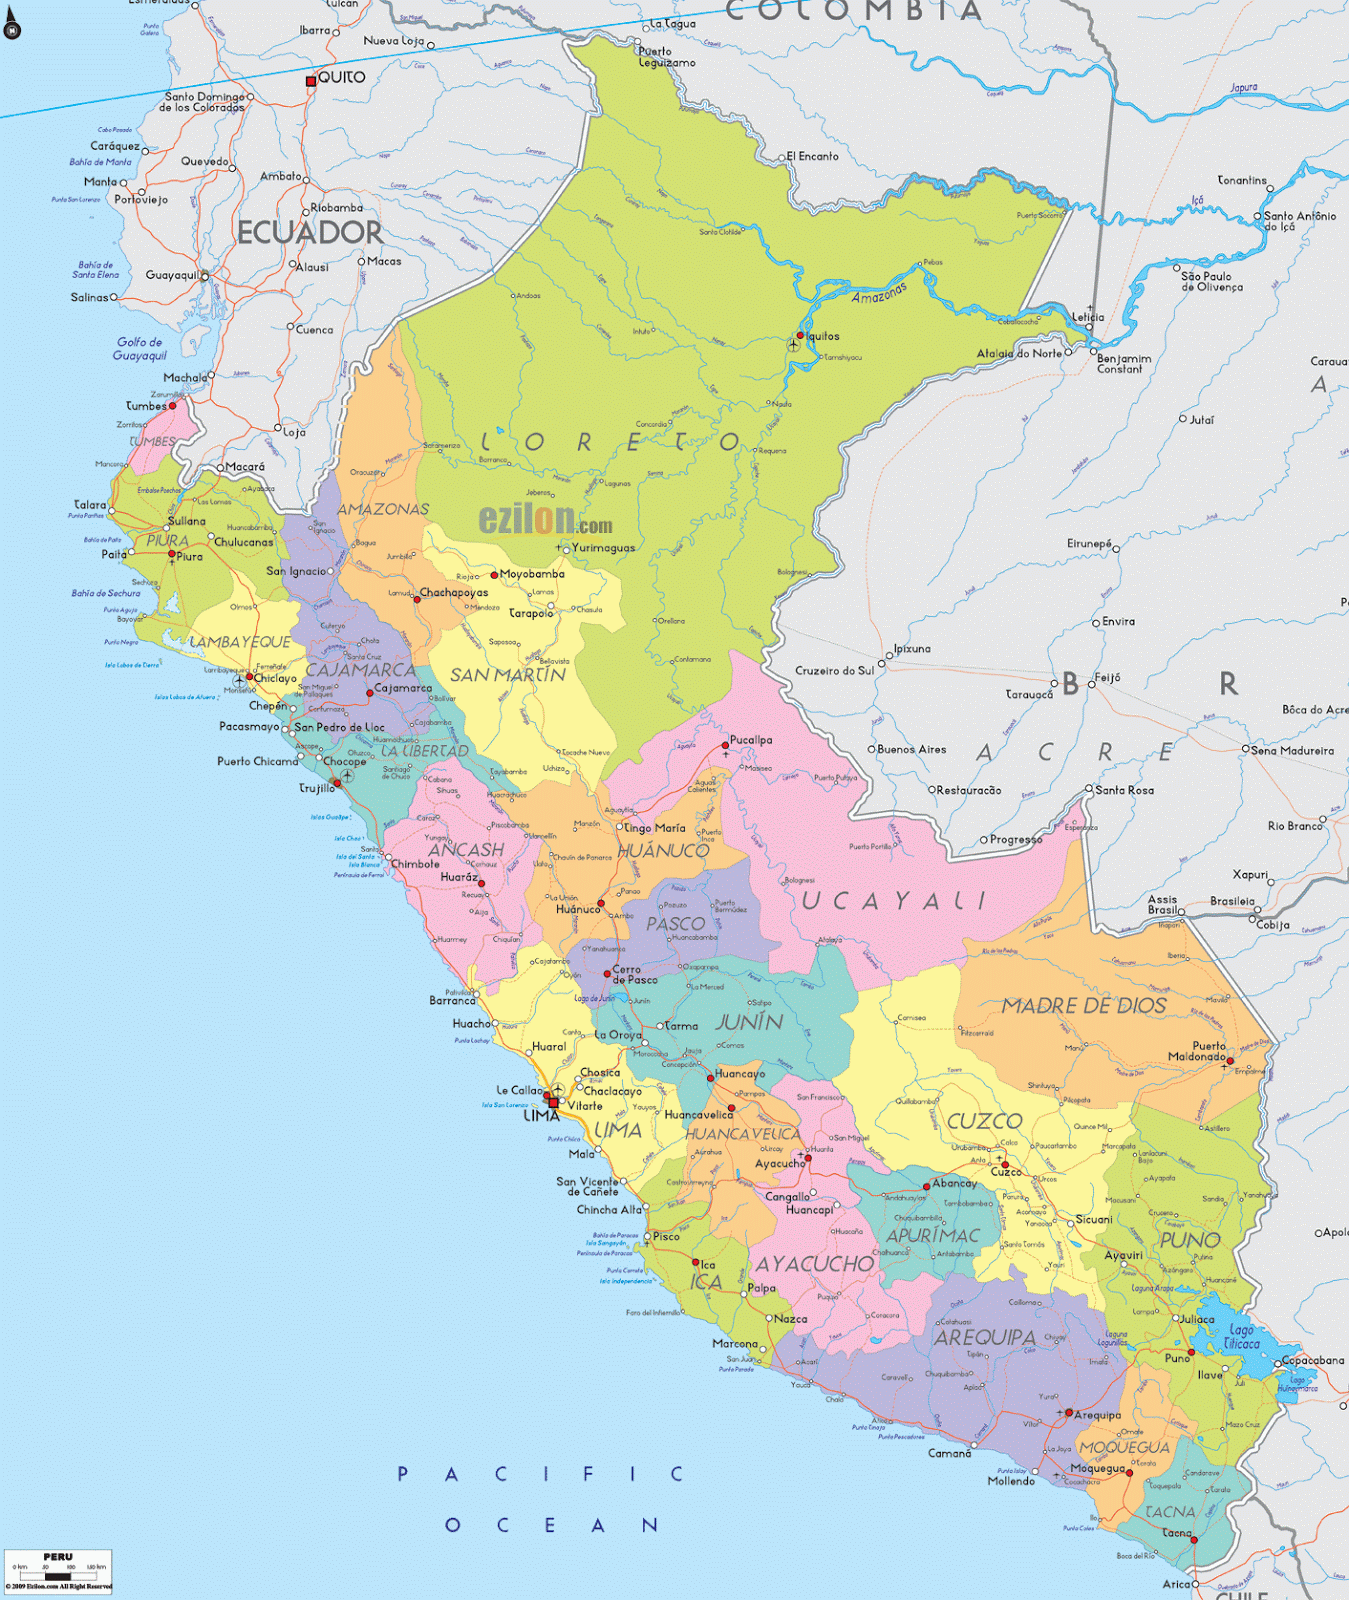 MAPS OF PERU